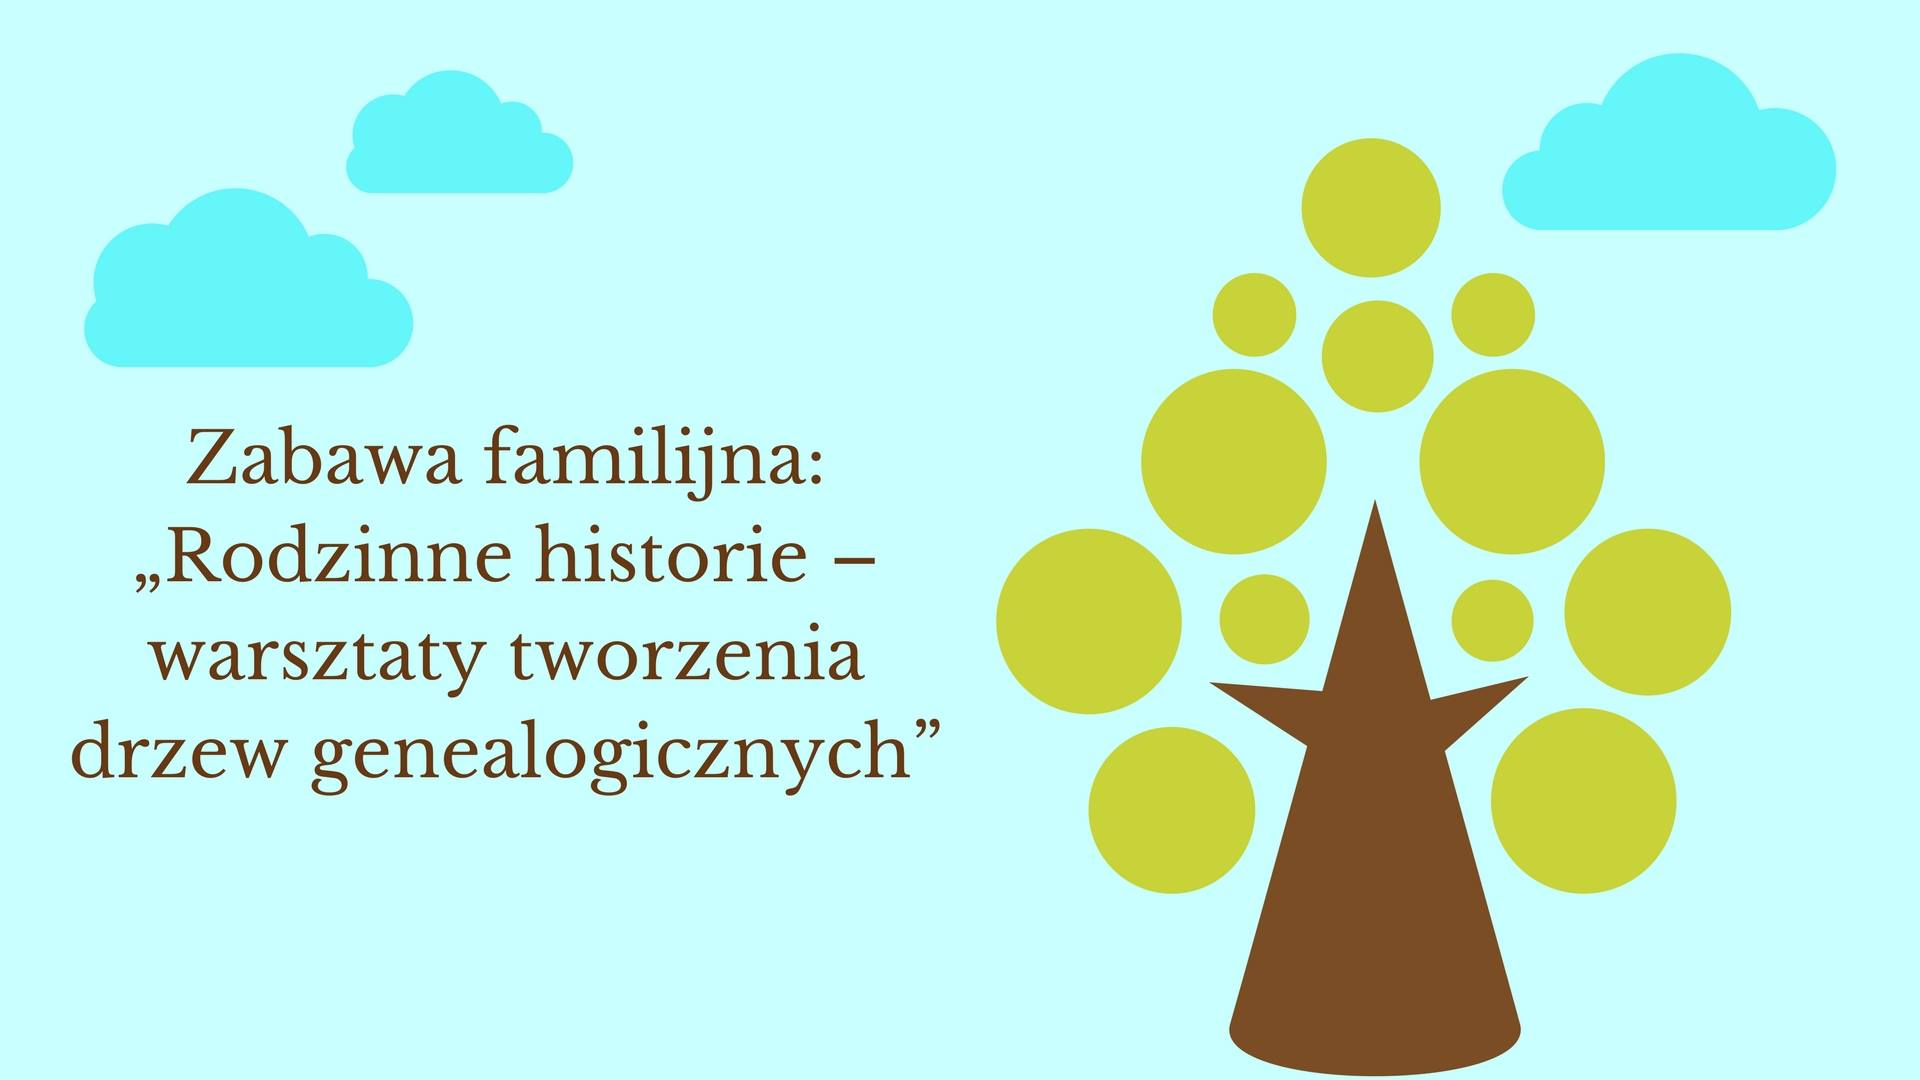 Rodzinne historie – warsztaty tworzenia drzew genealogicznych